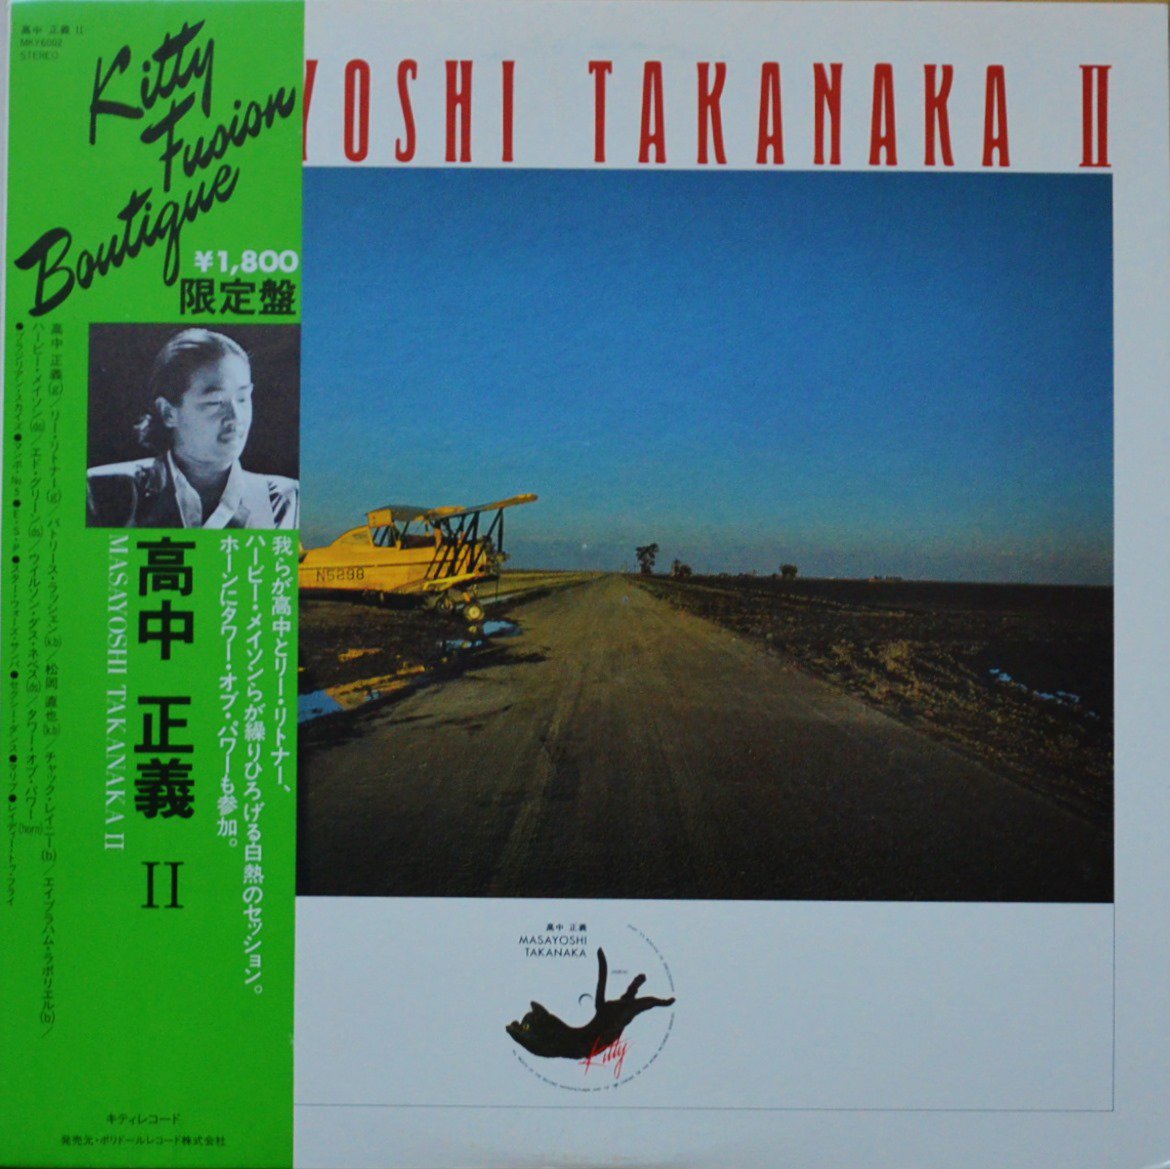 高中正義 MASAYOSHI TAKANAKA / MASAYOSHI TAKANAKA II (LP)